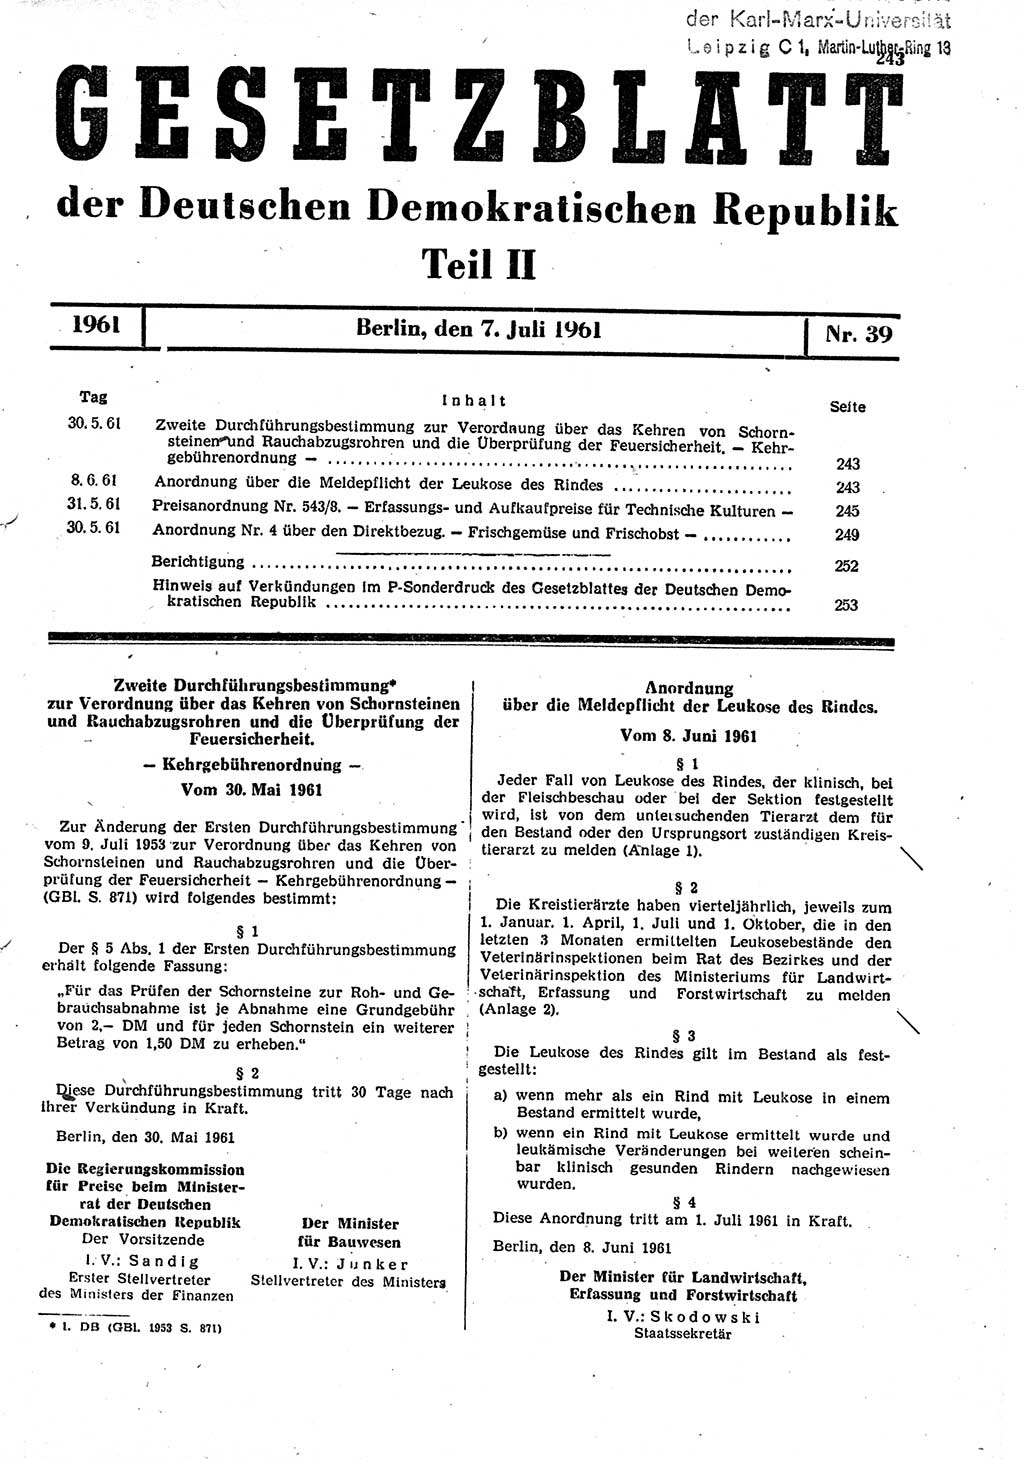 Gesetzblatt (GBl.) der Deutschen Demokratischen Republik (DDR) Teil ⅠⅠ 1961, Seite 243 (GBl. DDR ⅠⅠ 1961, S. 243)